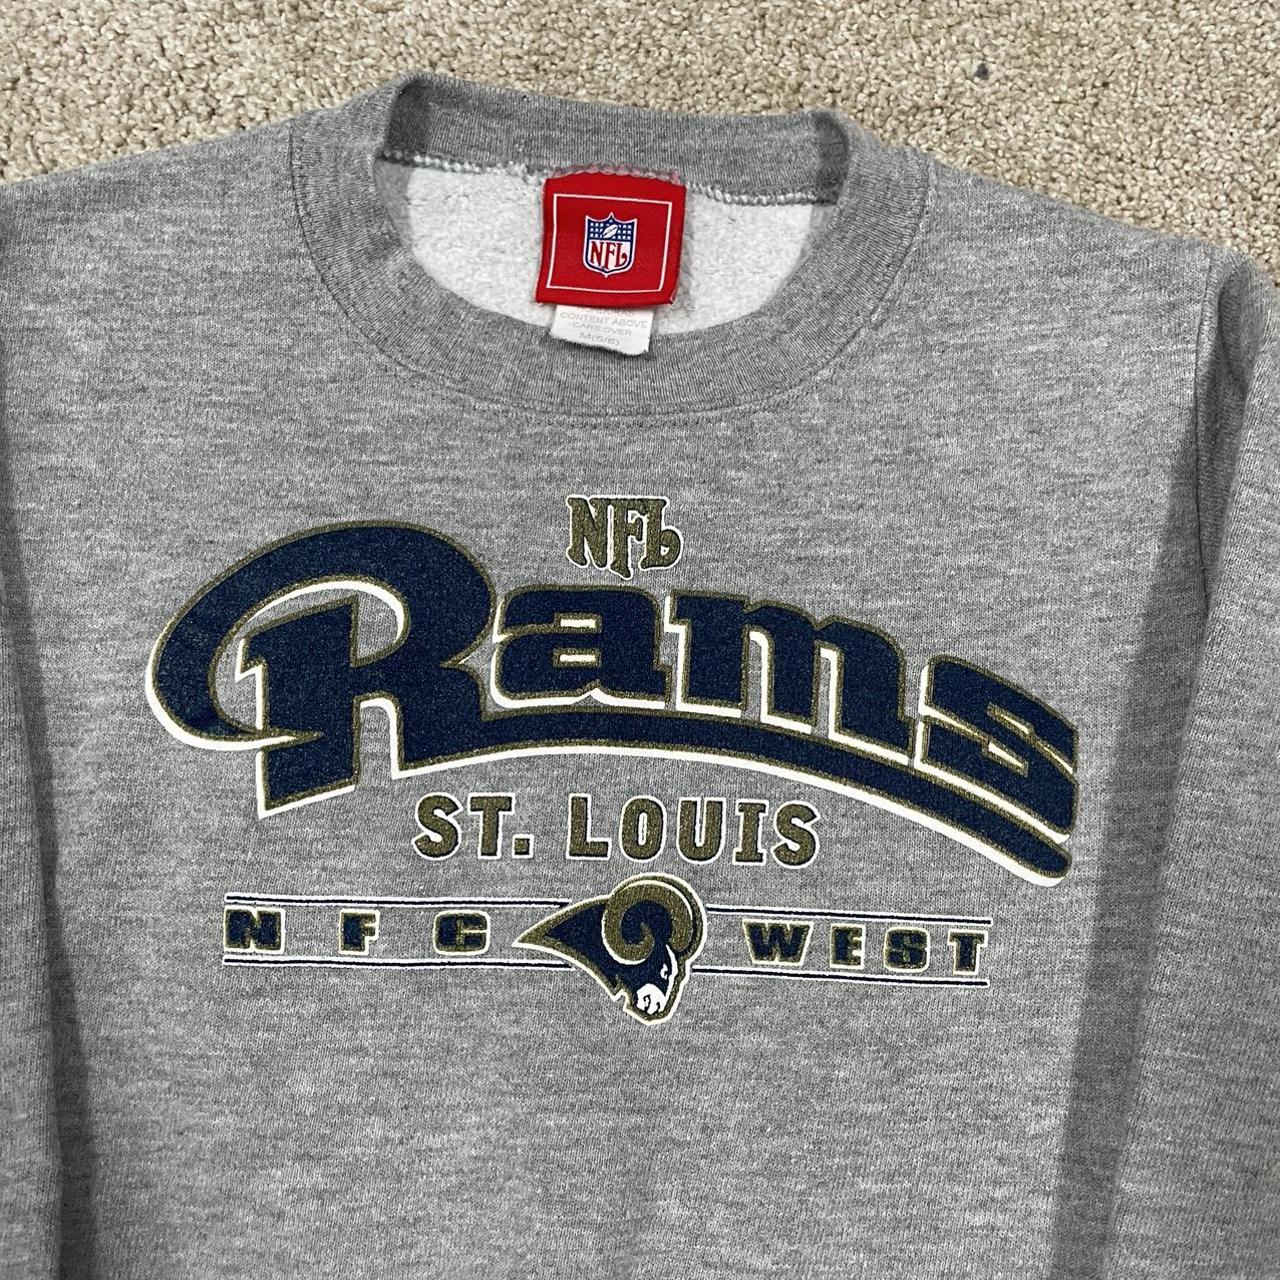 Vintage St. Louis Rams American Football White Sweatshirt 